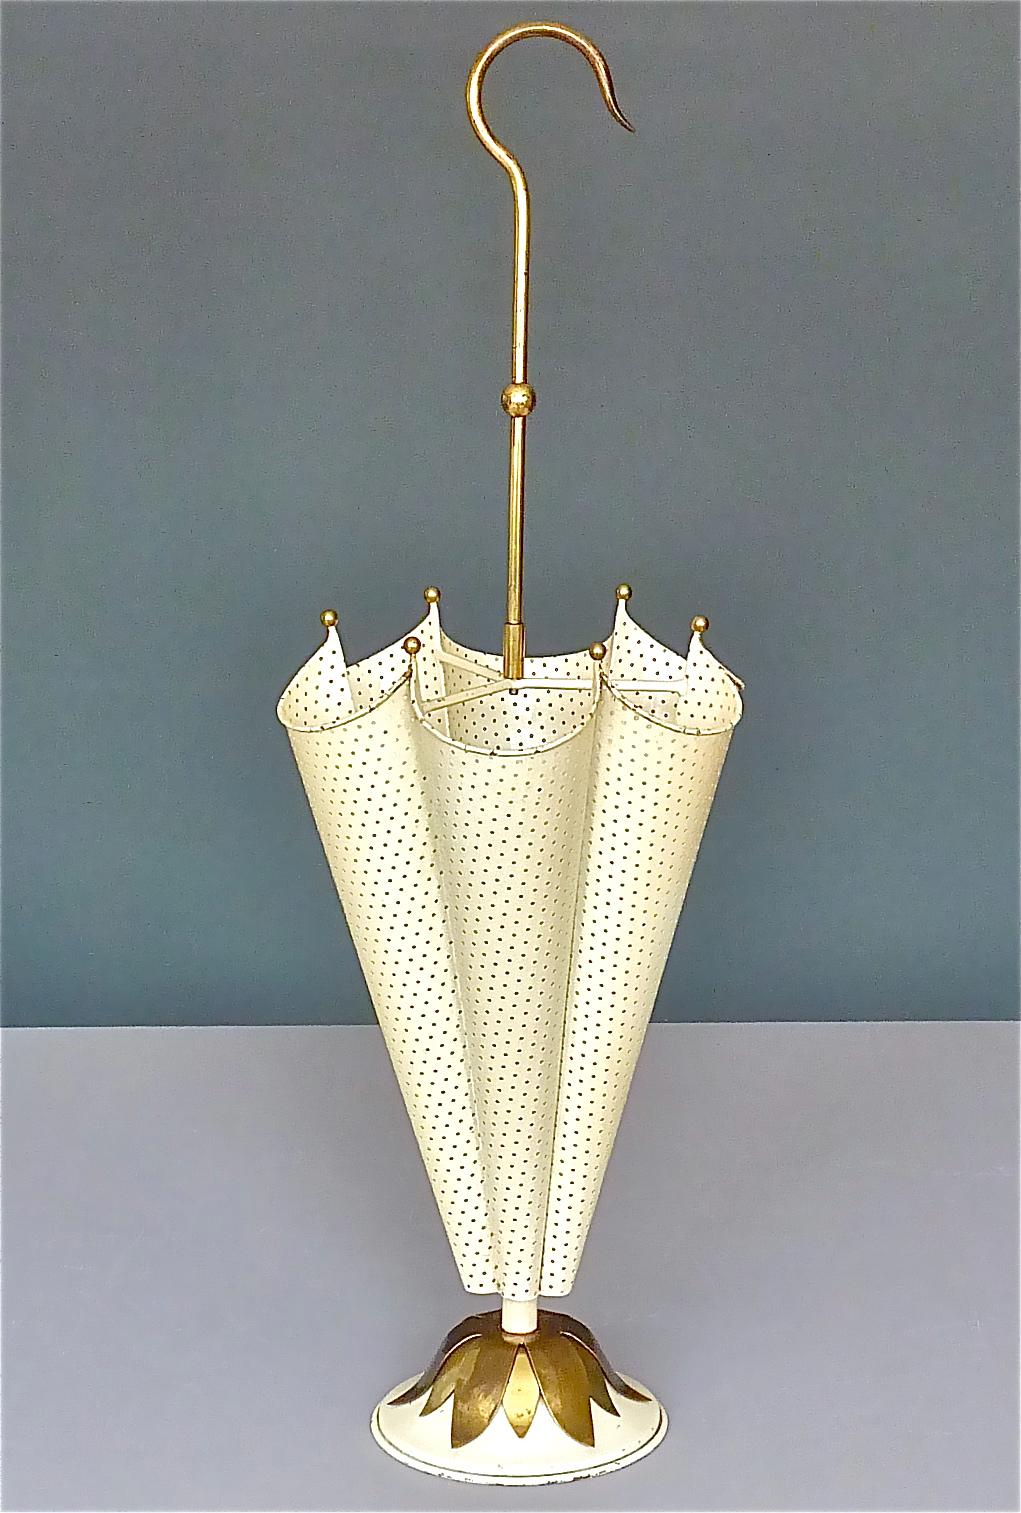 Erstaunlicher Schirmständer aus der Mitte des Jahrhunderts. Der Entwurf wird Mathieu Matégot, Frankreich, um 1955 zugeschrieben. Er ist aus elfenbeinfarbenem bis cremefarbenem, emailliertem und perforiertem Metall in Kombination mit schönen